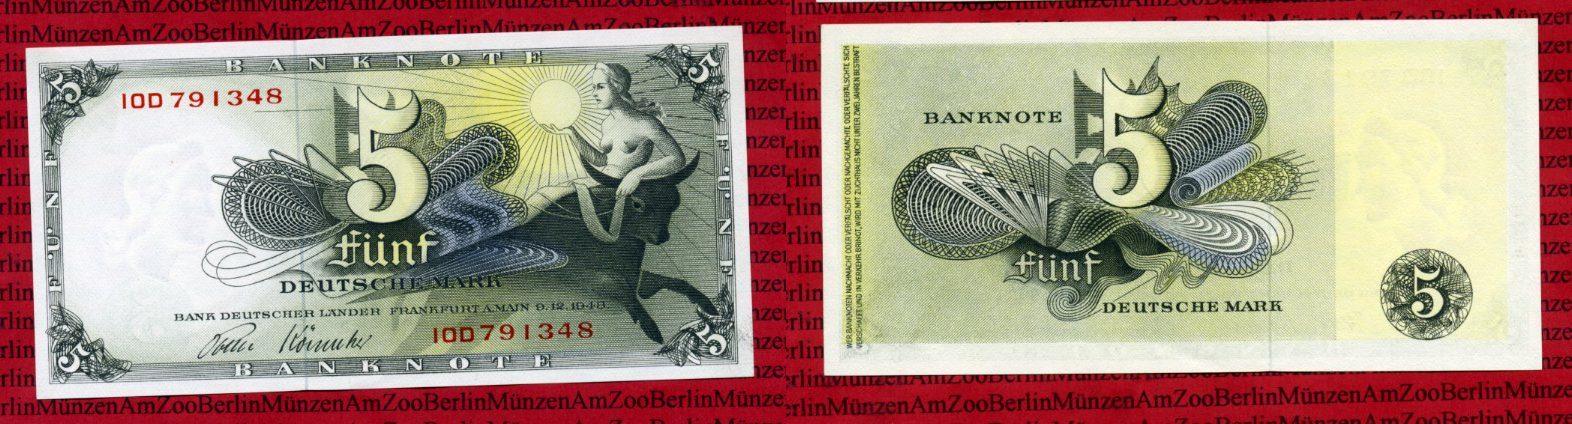 Foto Brd, Bank Deutscher Länder 5 Dm Deutsche Mark Europa Entführung 1948, foto 85364